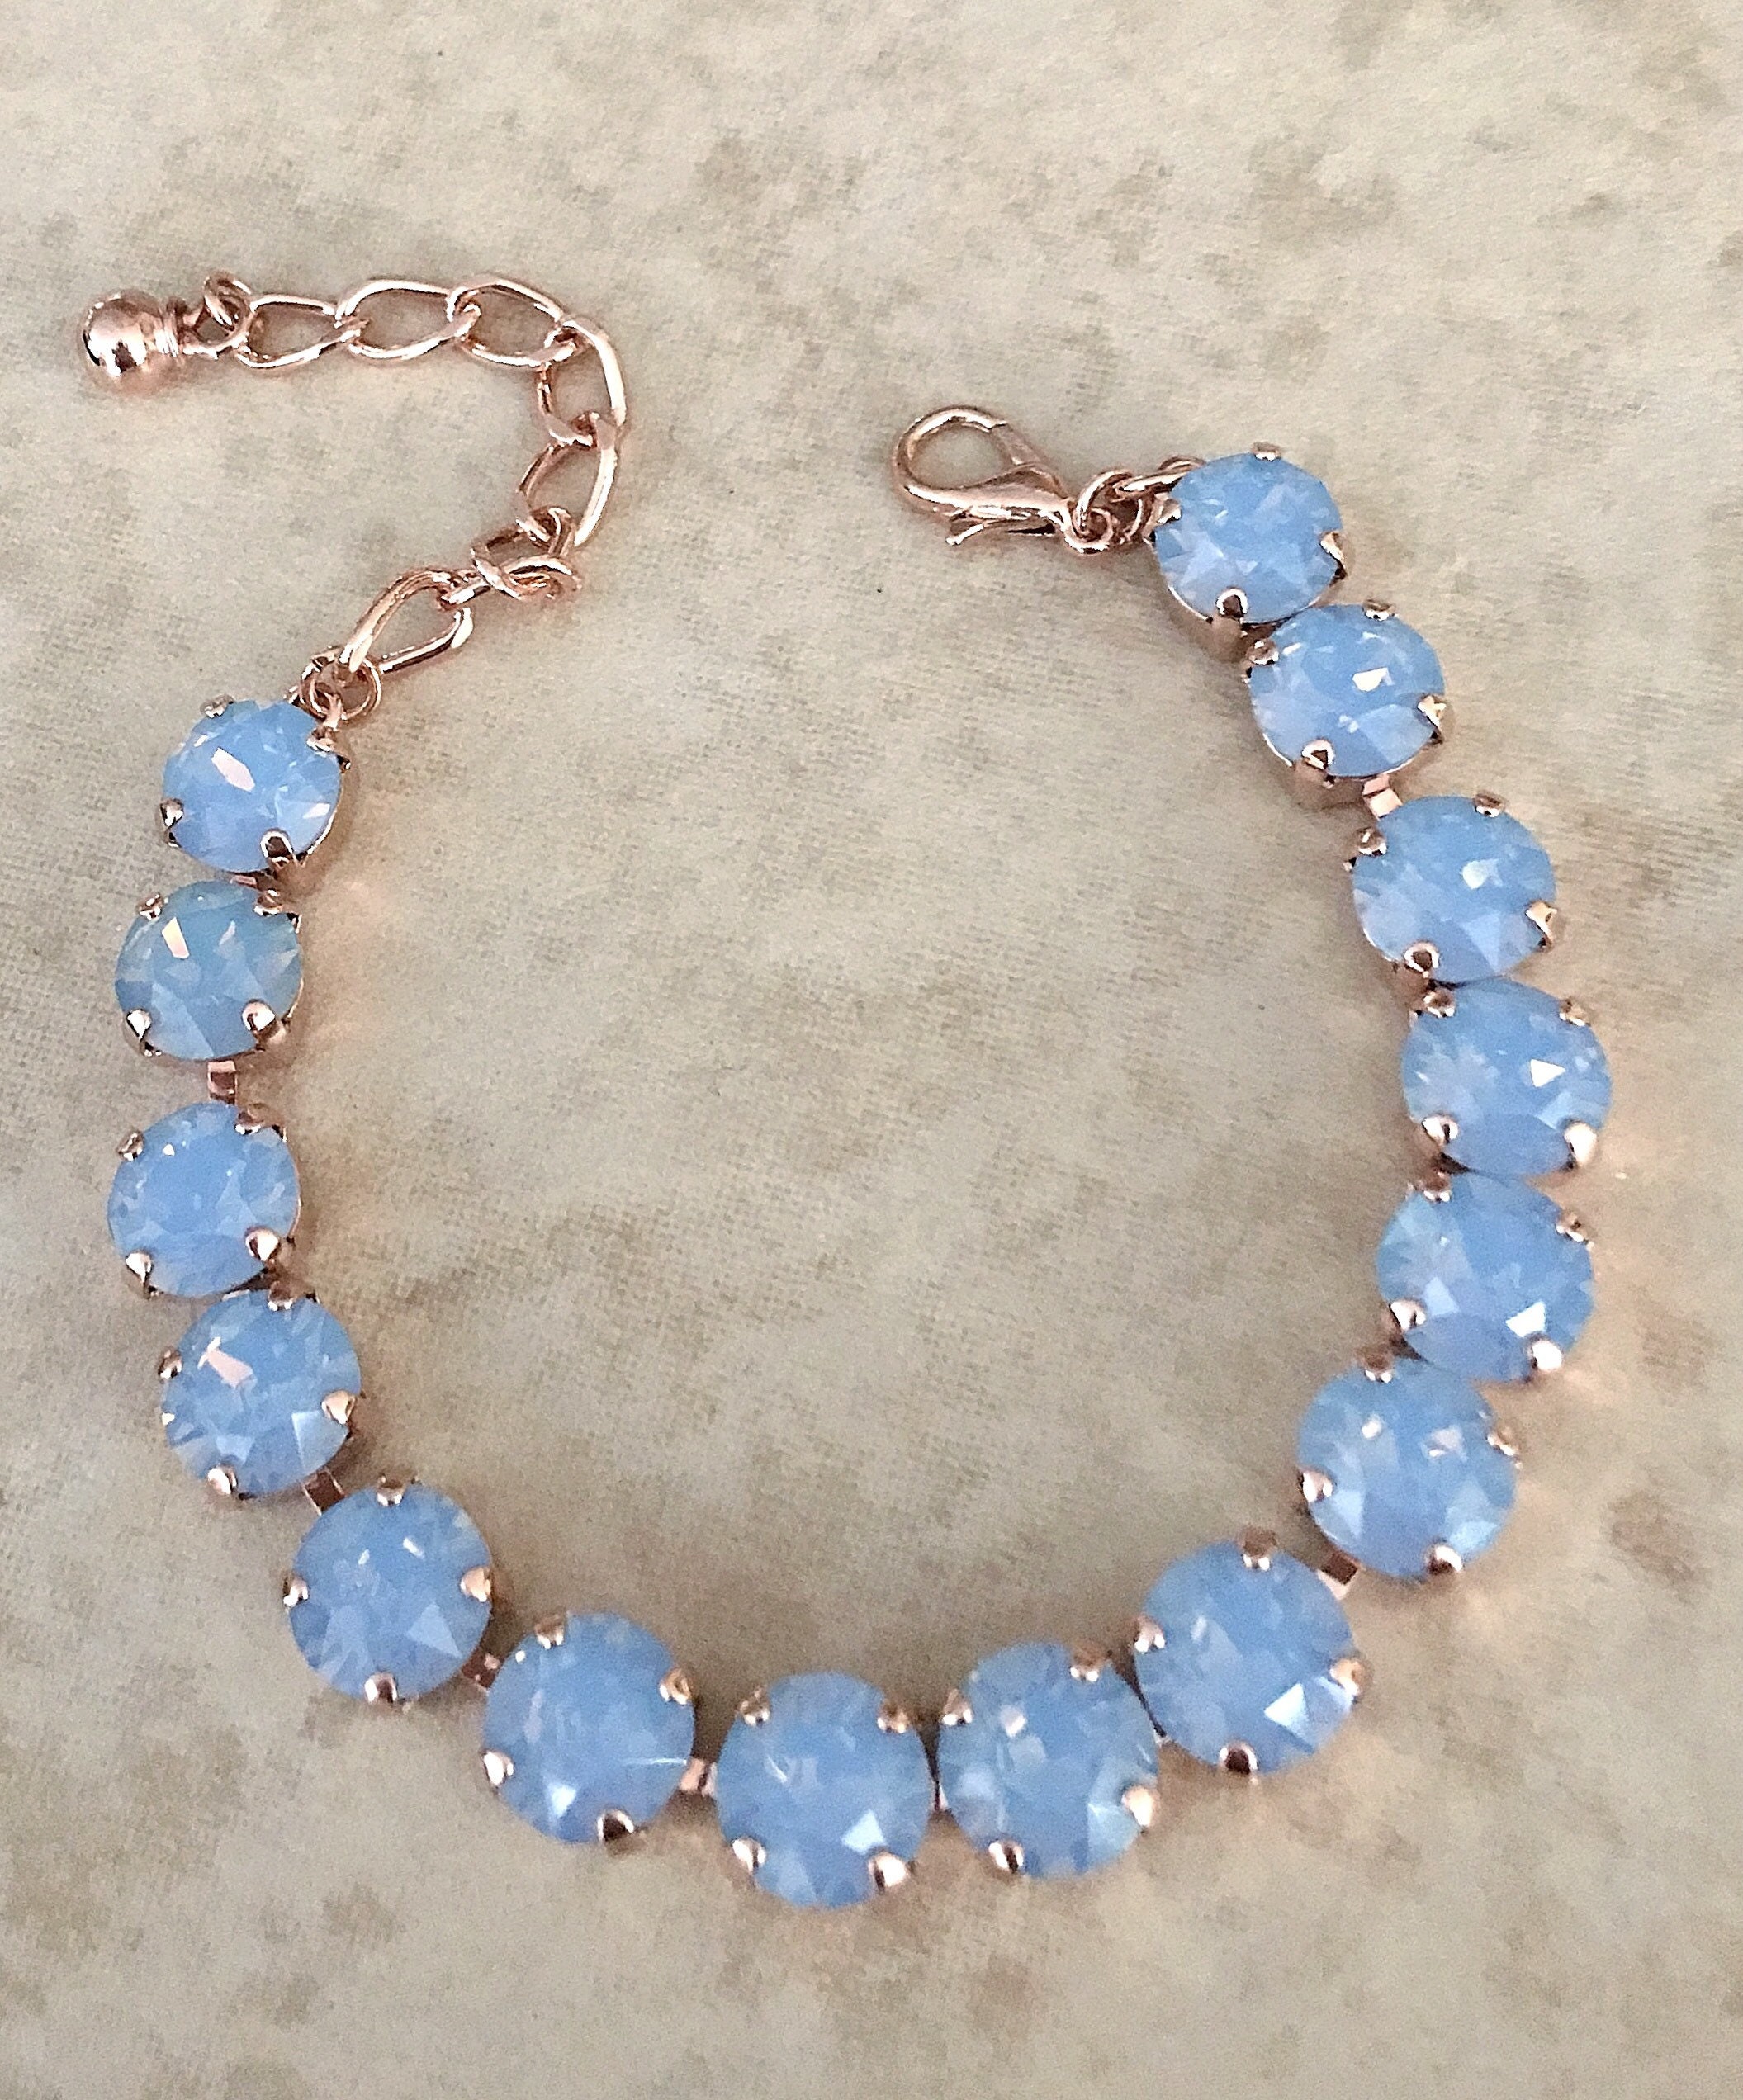 Crystal Bracelet | Buy Online Natural Pink Opal Cube Beads Bracelet